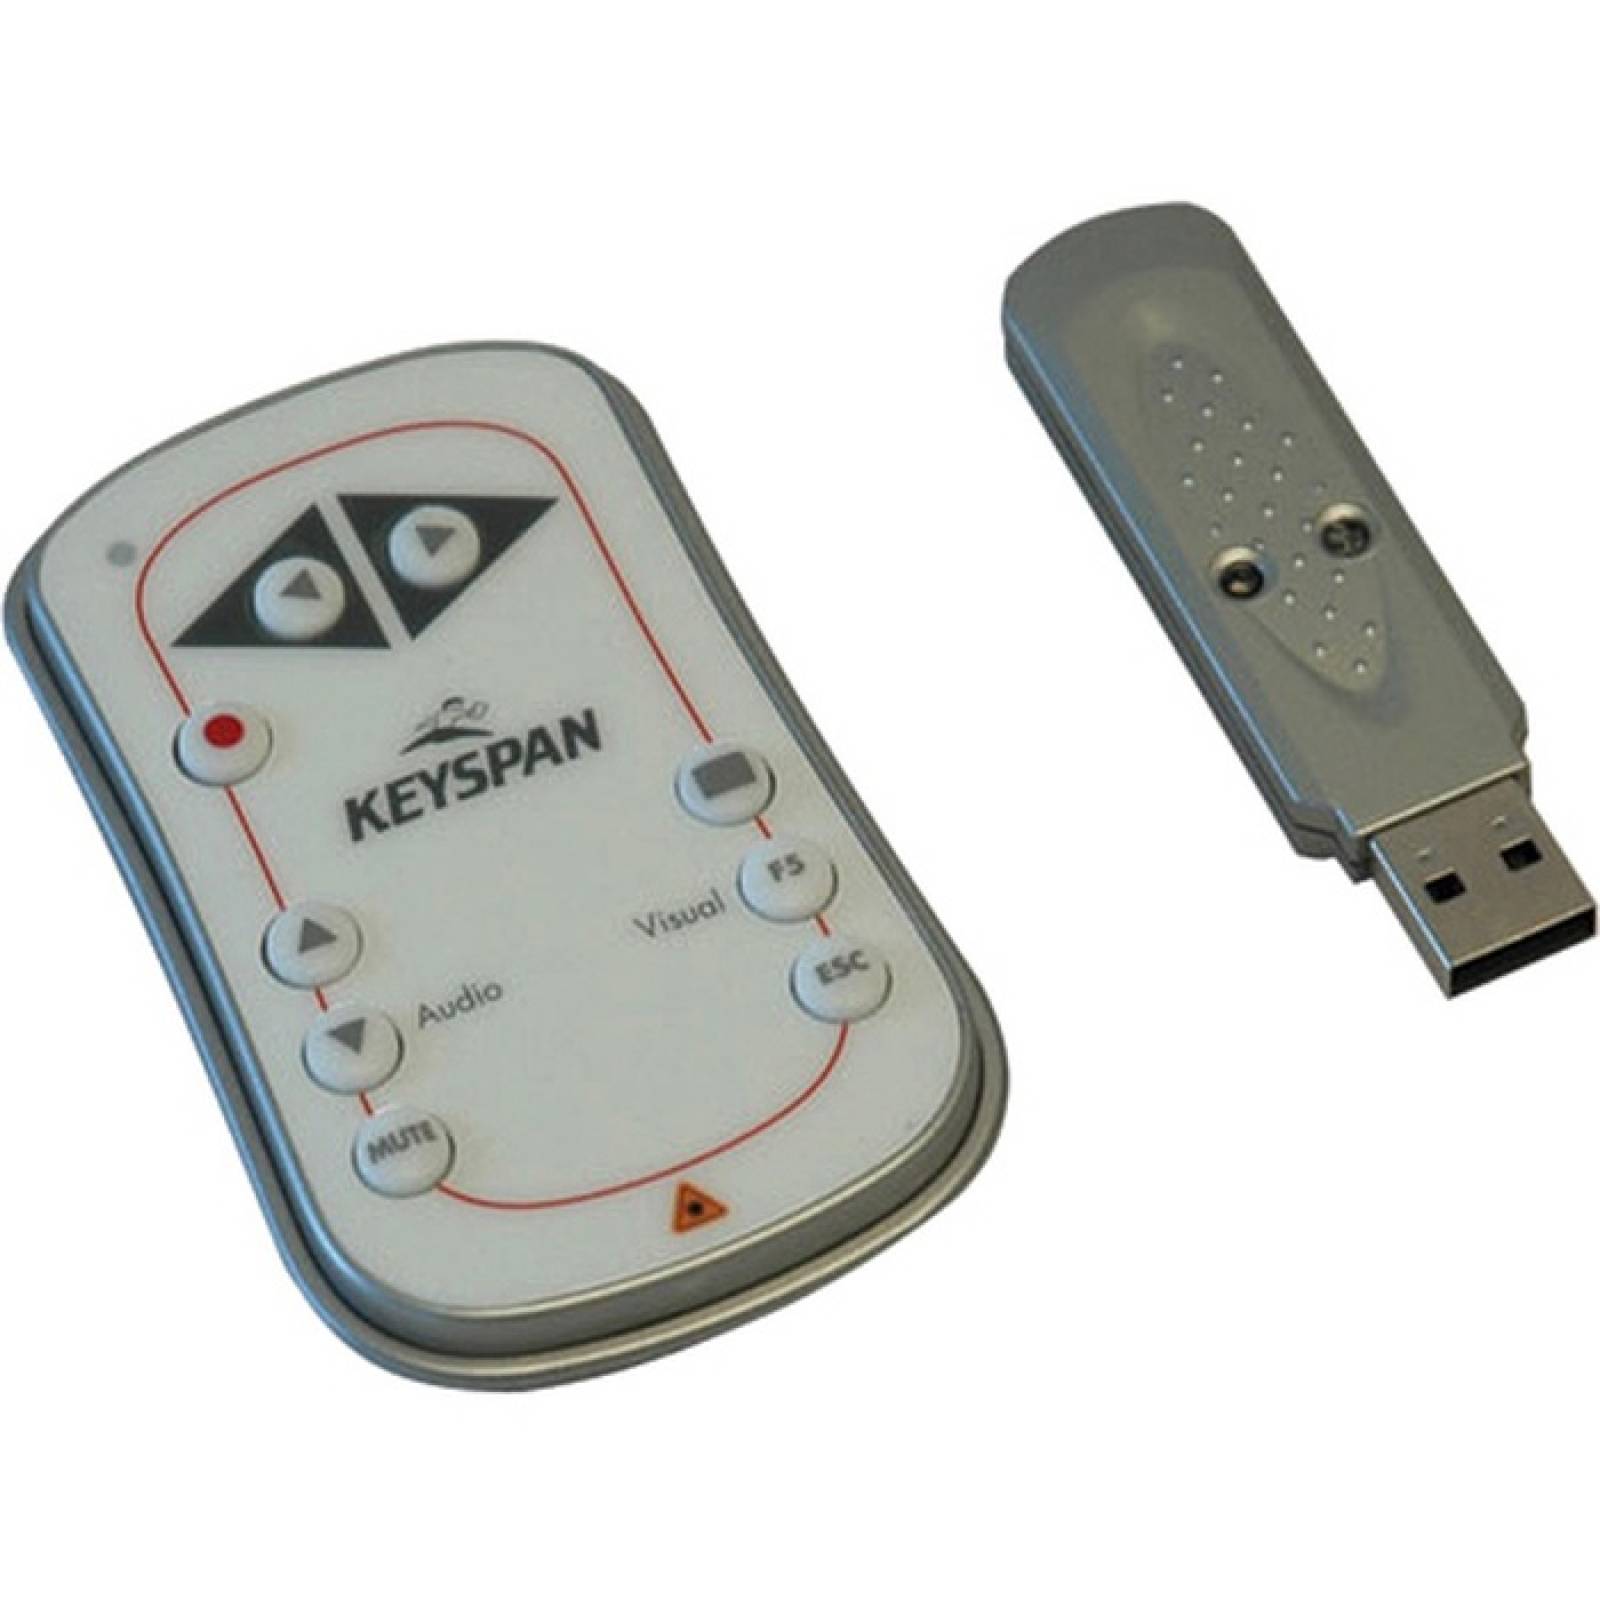 Tripp Lite Keyspan Easy Presenter control remoto inalmbrico con lser  audio blanco 60 pies